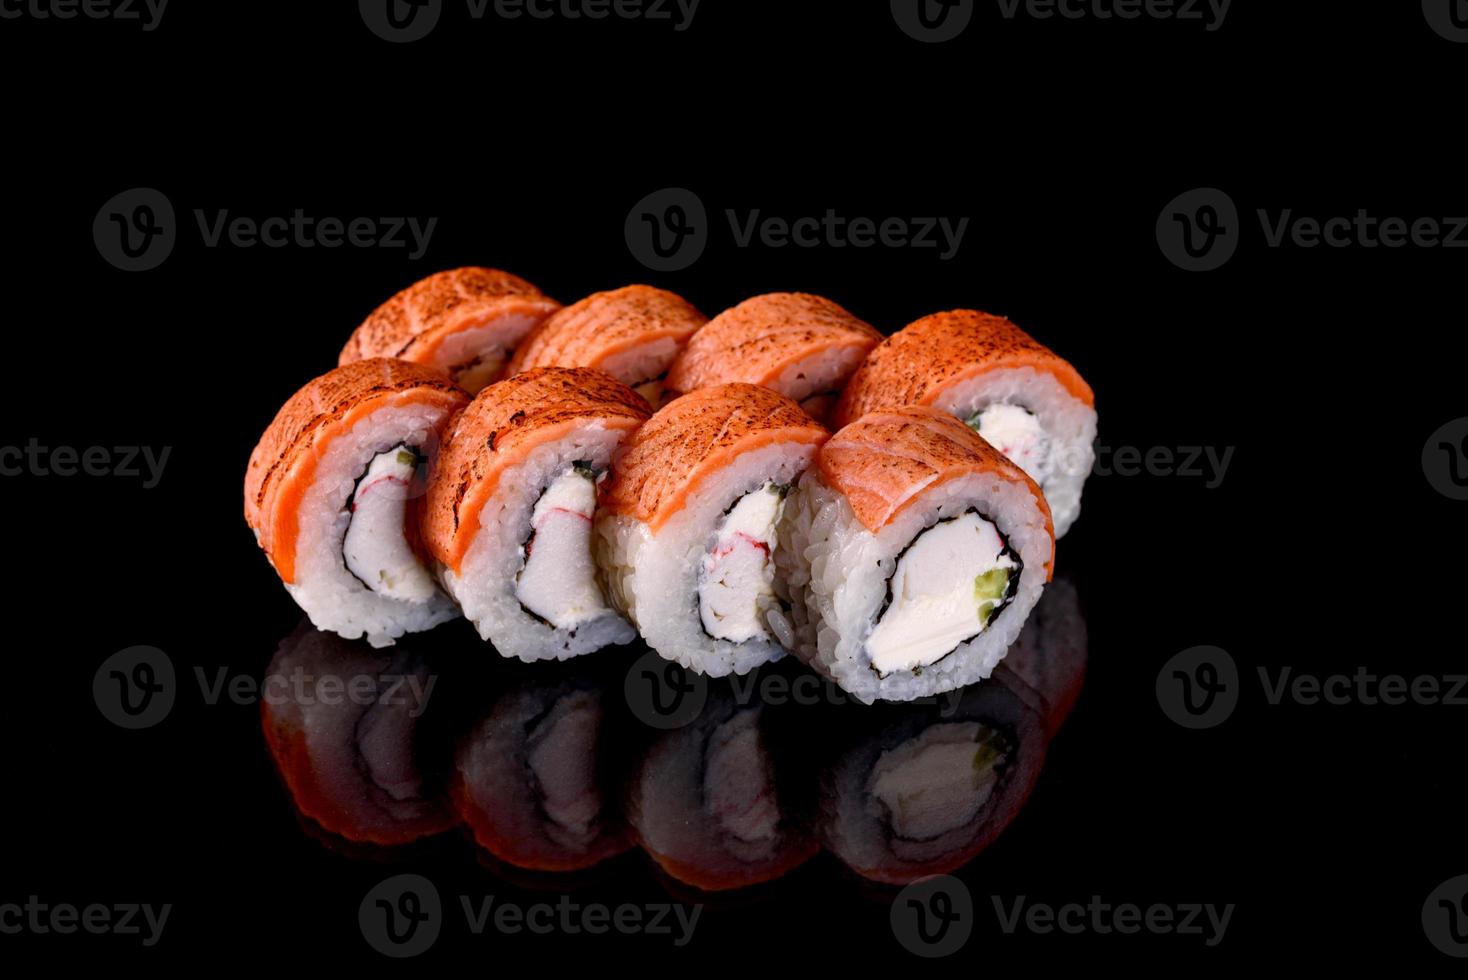 involtini di sushi freschi preparati con le migliori varietà di pesce e frutti di mare foto